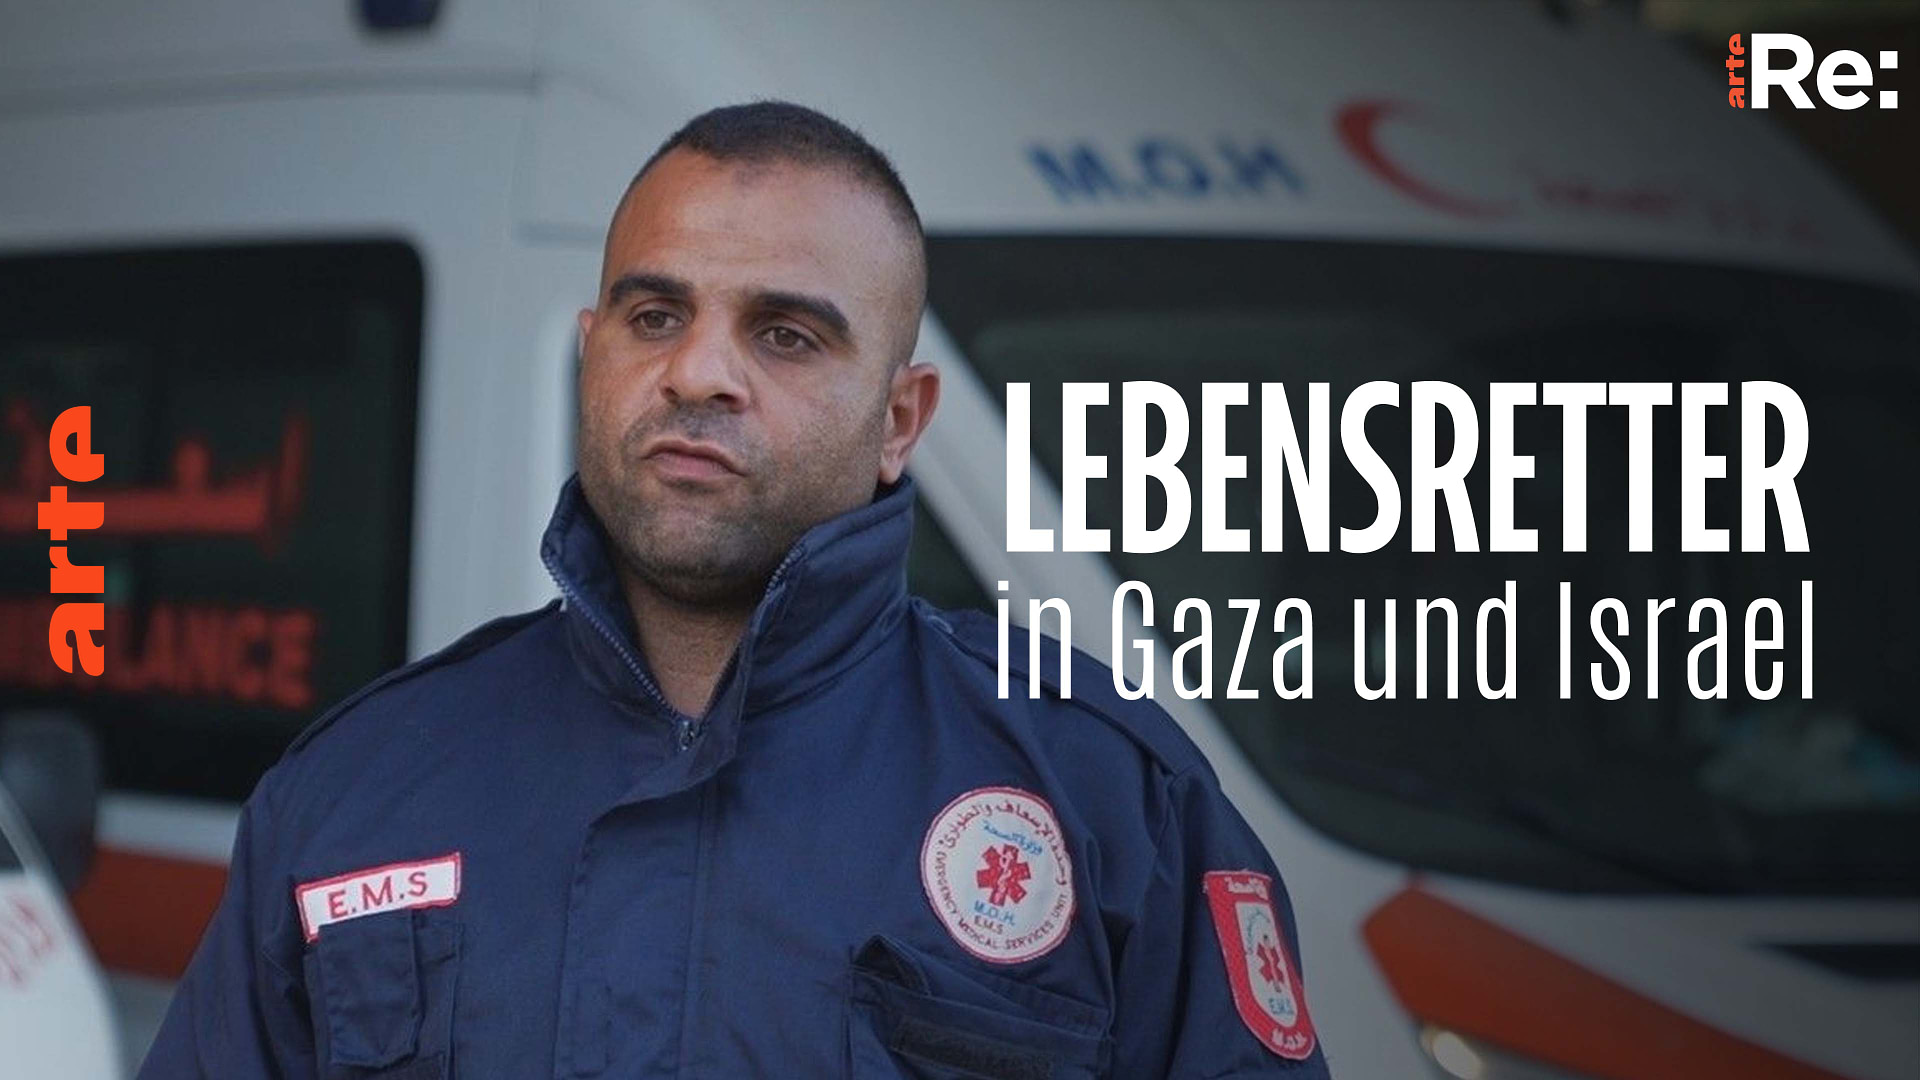 Re: Lebensretter in Gaza und Israel